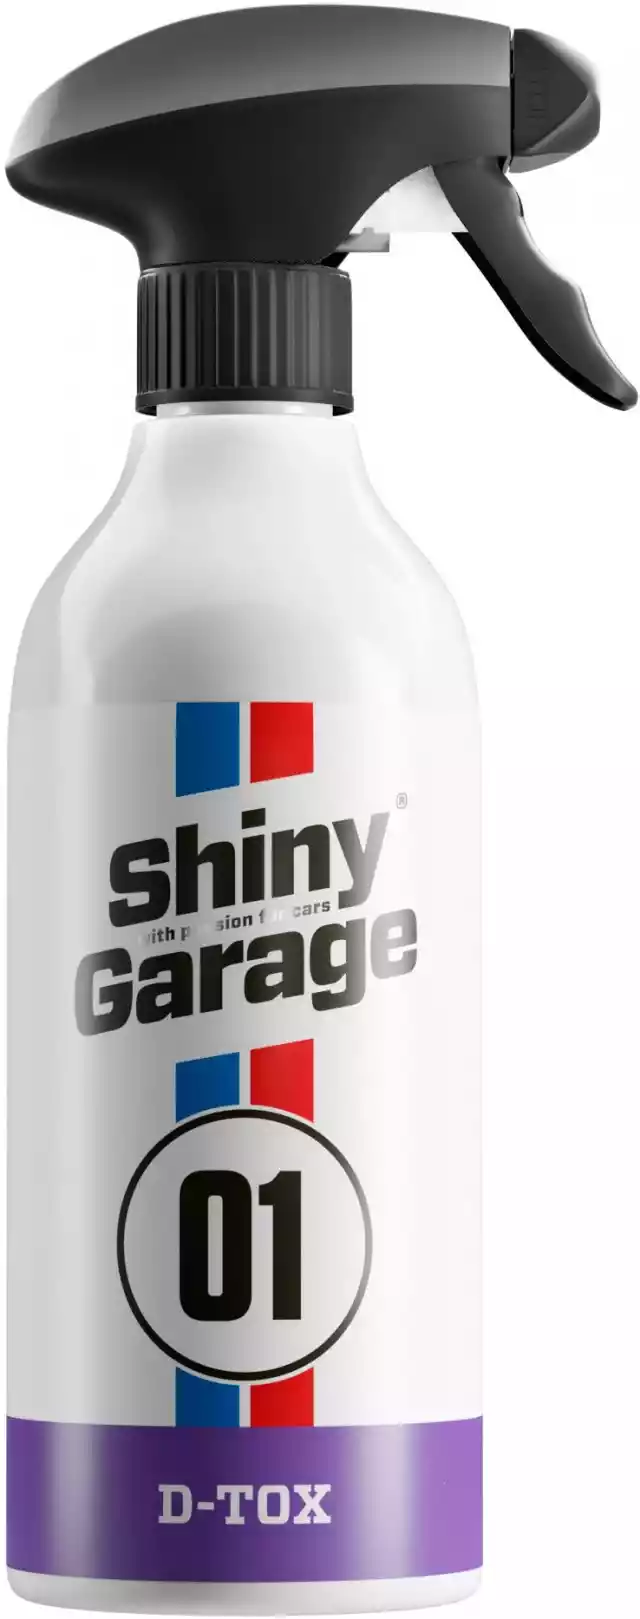 Shiny Garage D-Tox – Deironizer, Usuwa Lotną Rdzę I Pył Z Klockó